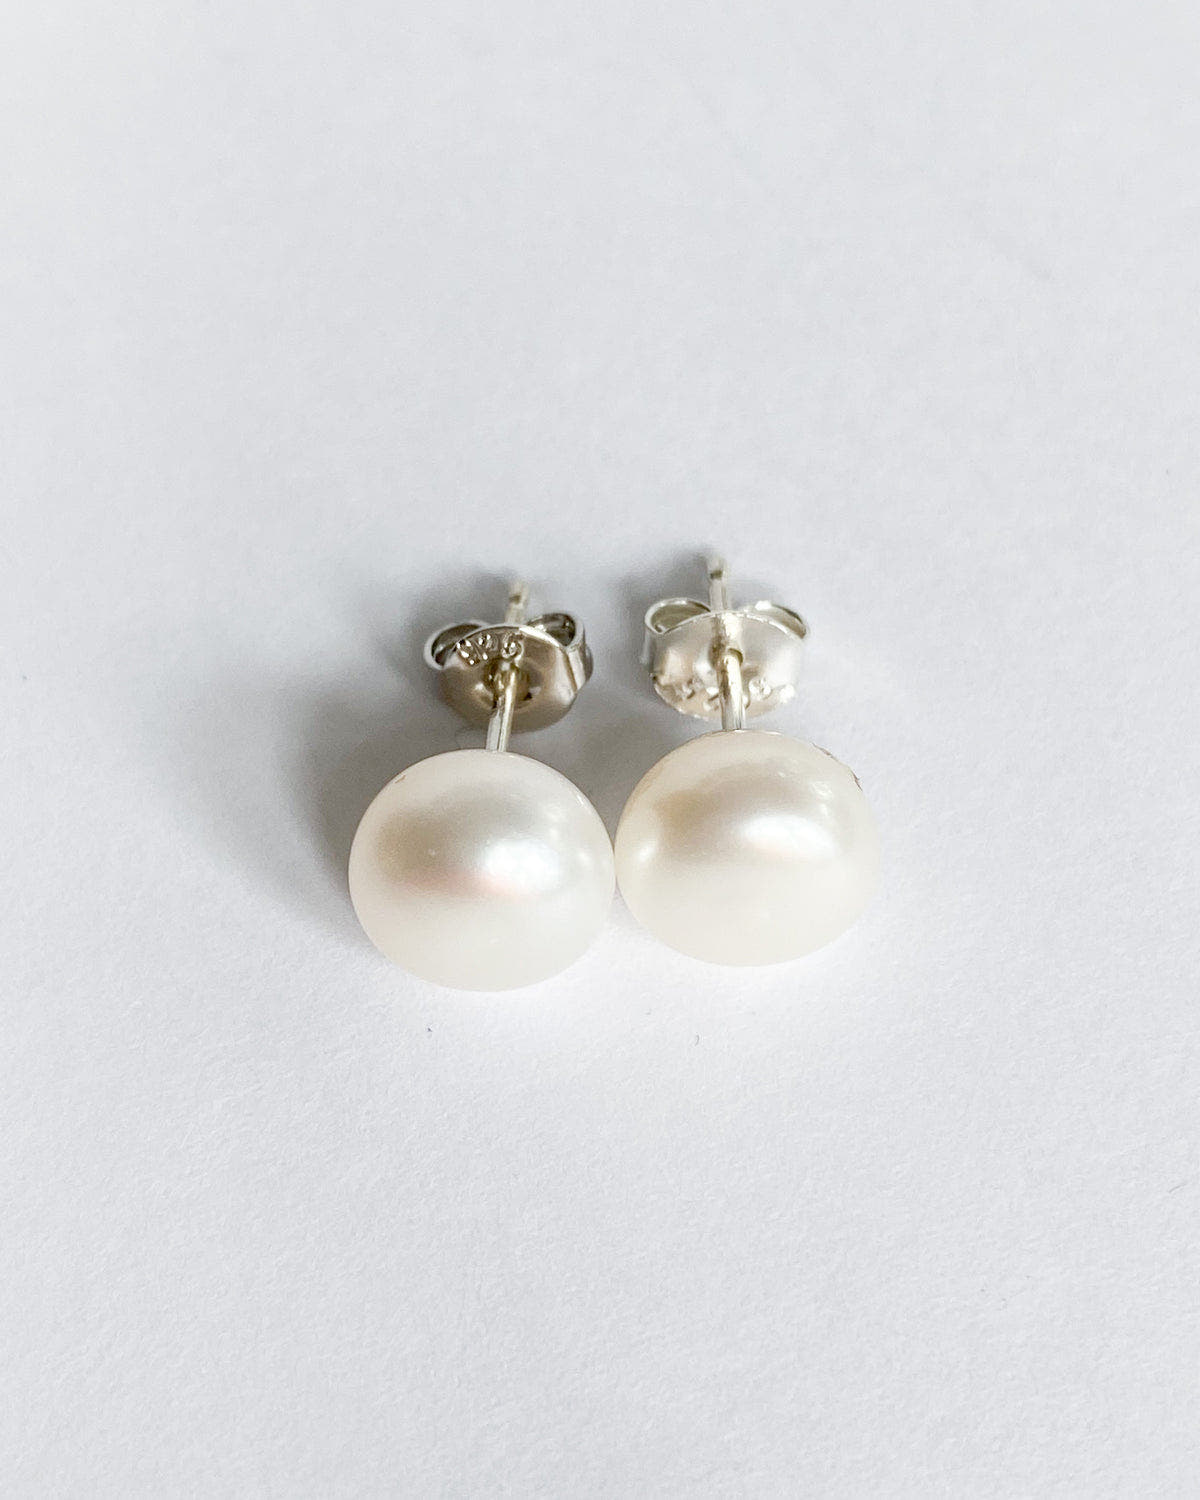 Real pearl stud earrings freeshipping - Ollijewelry